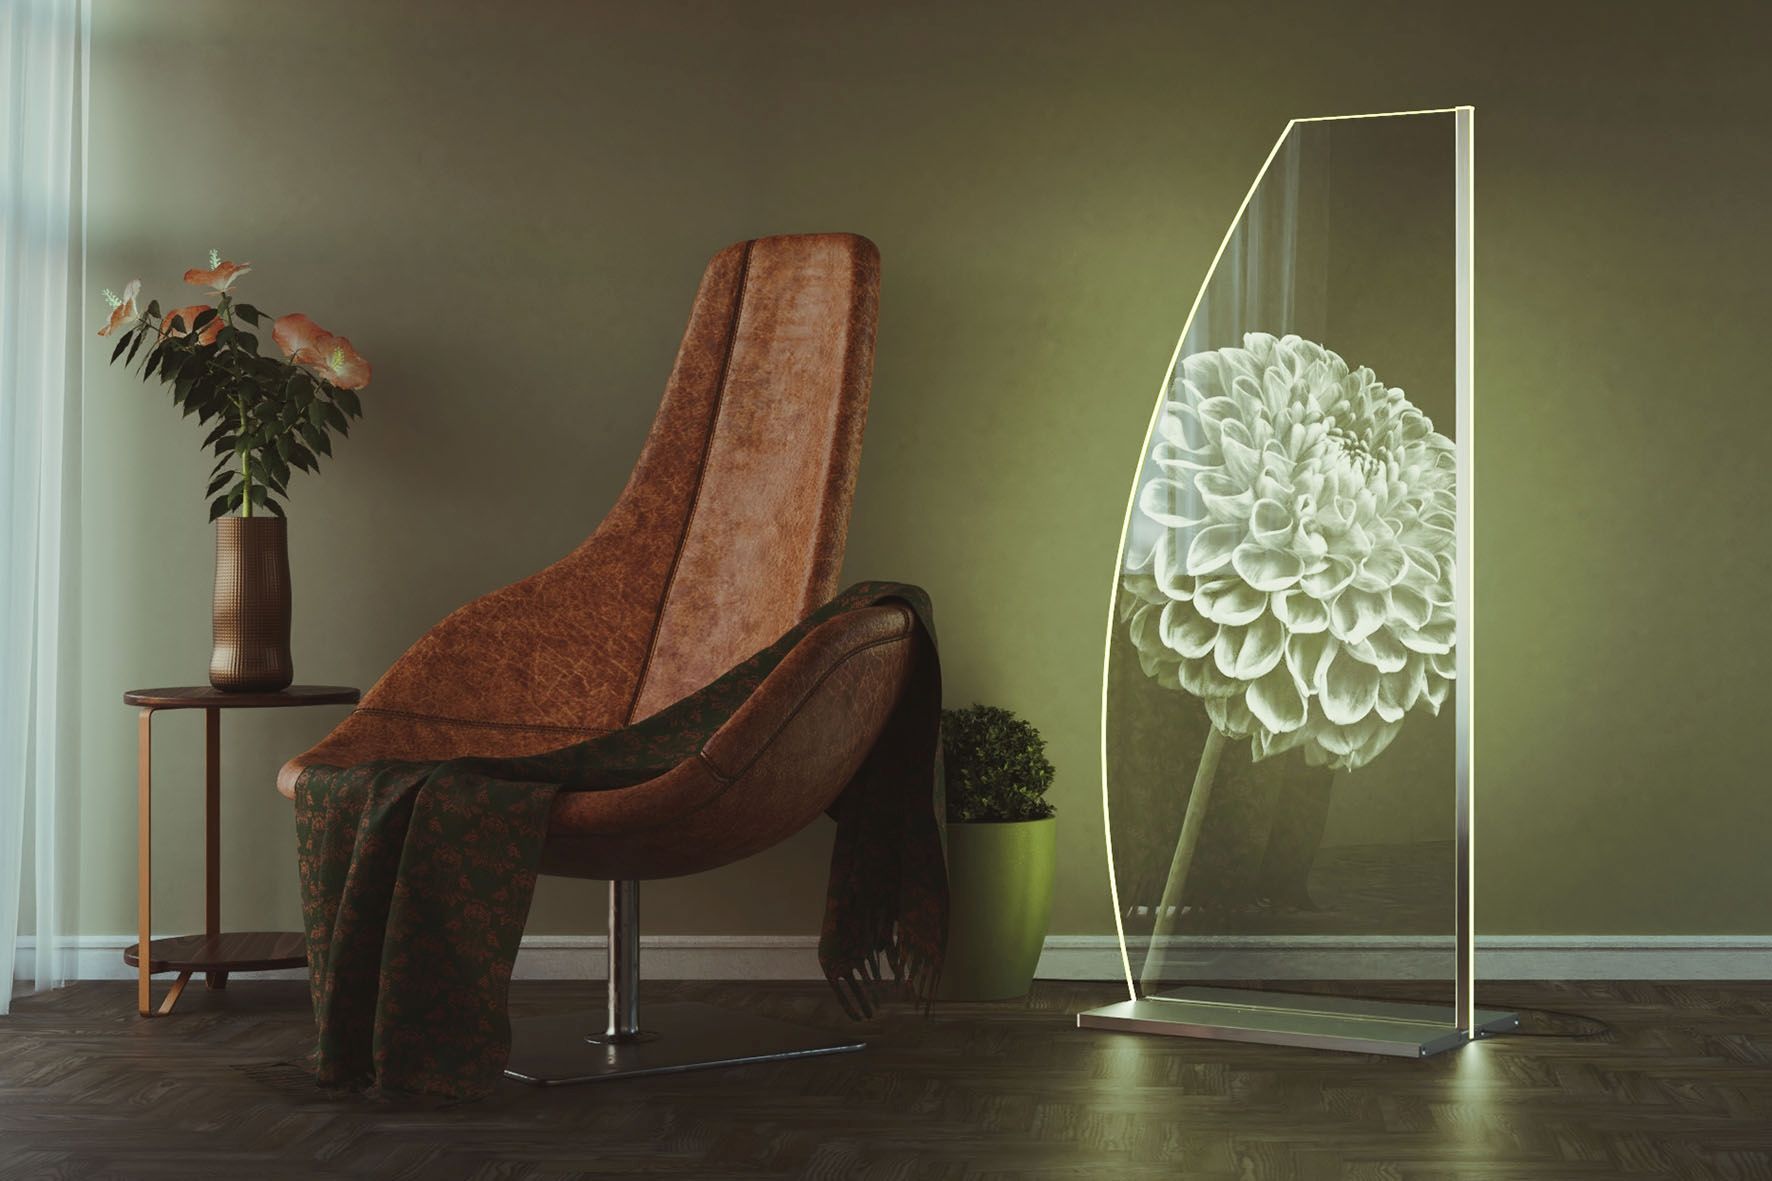 Eine fotorealistische Blume leuchtet aus der Lampe heraus. Foto: djd/inCrystal